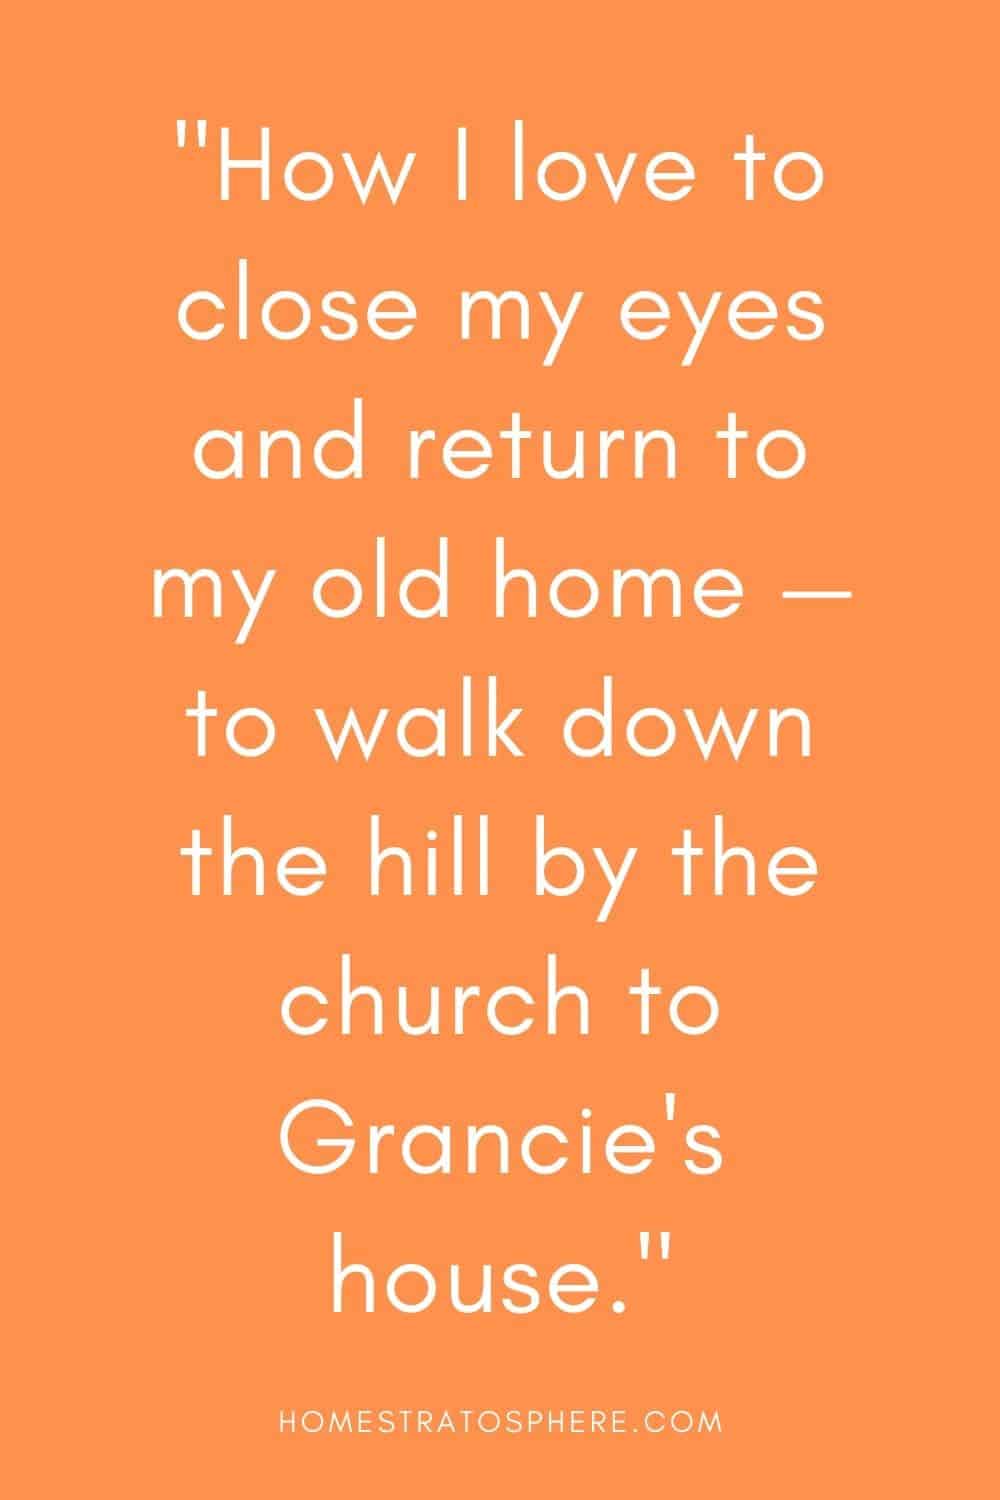 “我多么喜欢闭上眼睛，回到我的老家——沿着教堂旁边的小山走下去，回到格朗西的家。”